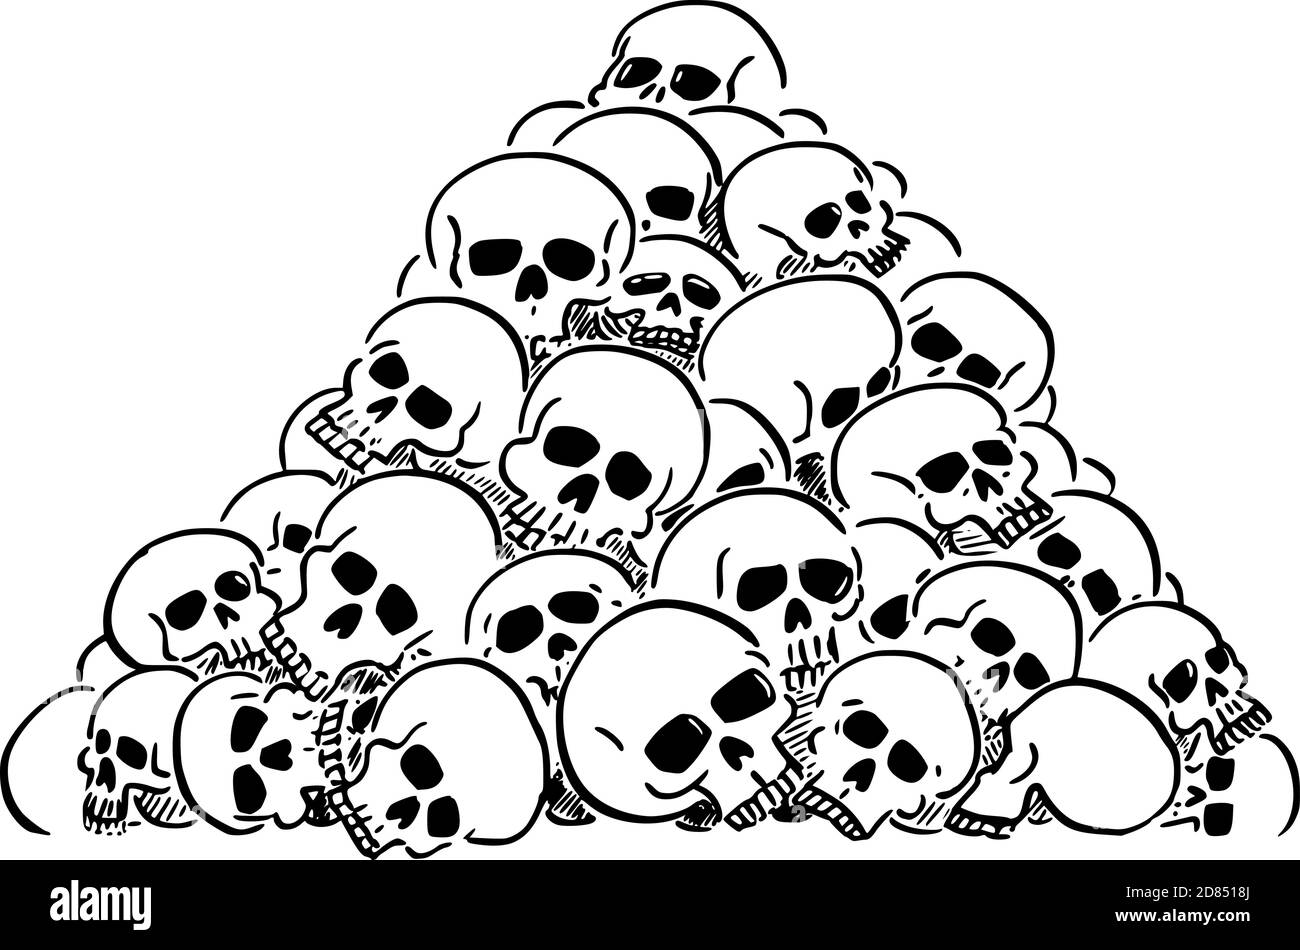 Illustration de dessin animé vectoriel de tas ou de tas de crânes humains. Concept de violence, d'épidémie, de guerre ou de mort. Illustration de Vecteur